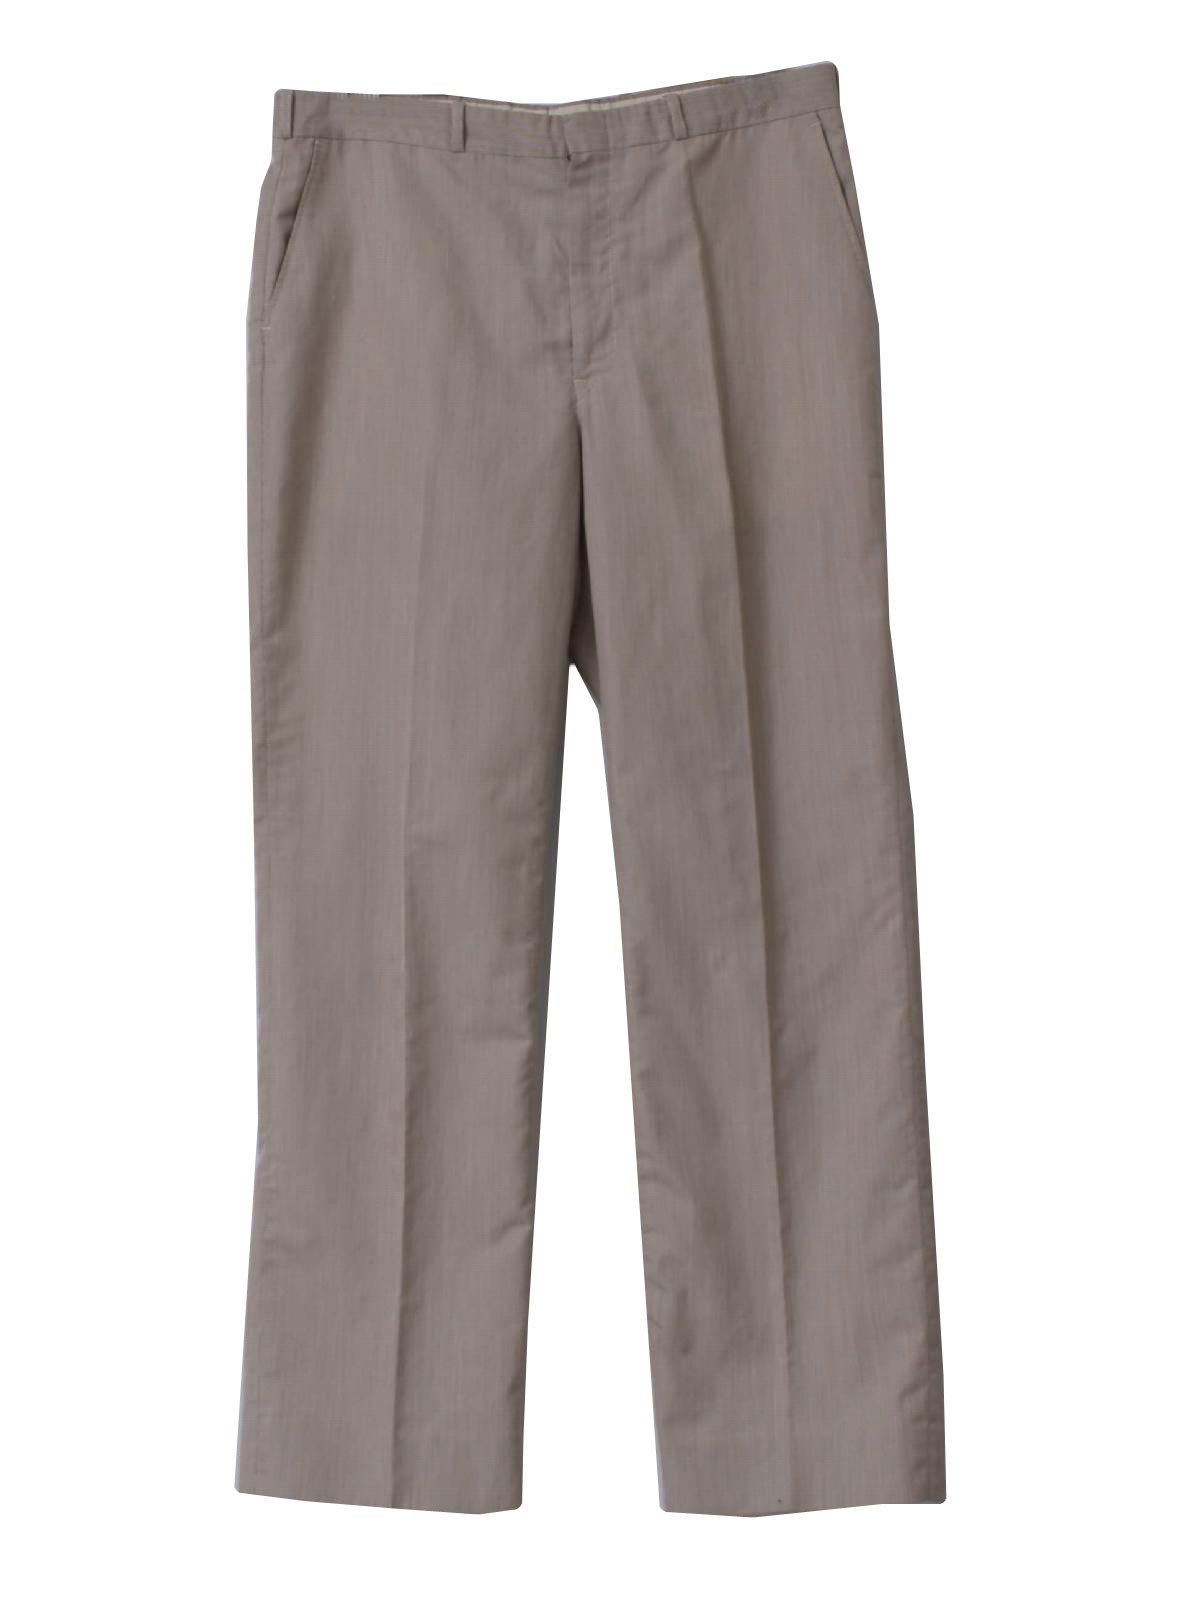 Retro 1980's Pants (Moores Suit Shop) : 80s -Moores Suit Shop- Mens ...